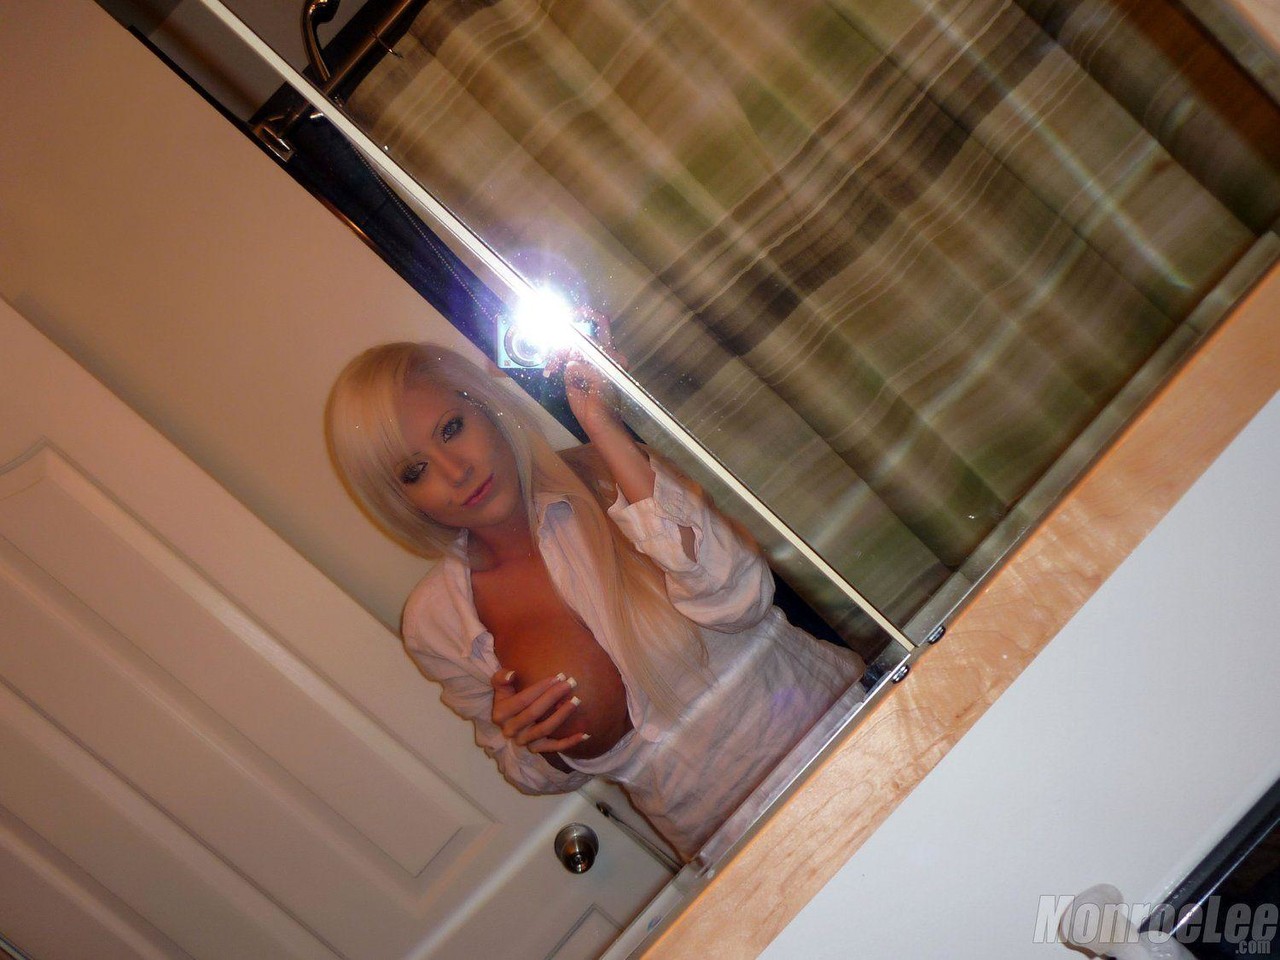 Monroe Lee Bathroom Selfies 포르노 사진 #425648148